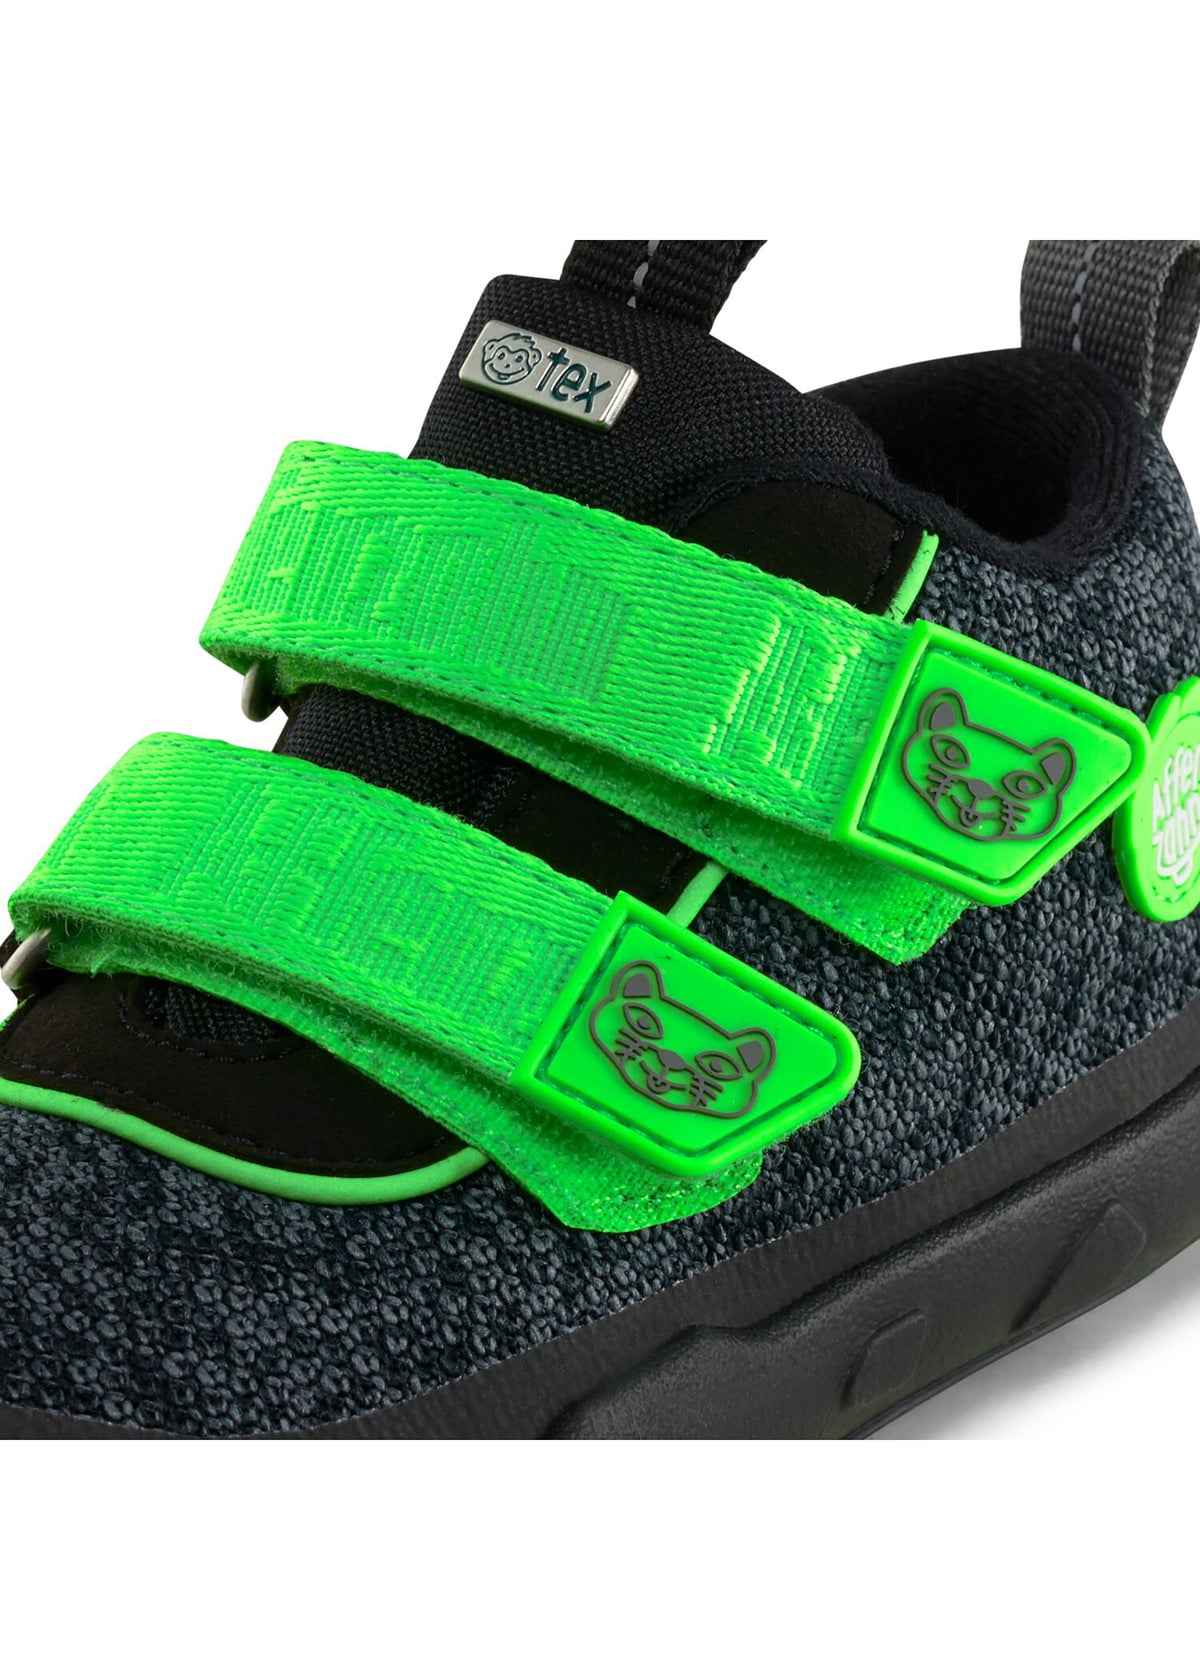 Barfotaskor för barn - Happy Knit Panther, mellansäsongsskor med TEX-membran - svarta, gröna klistermärken